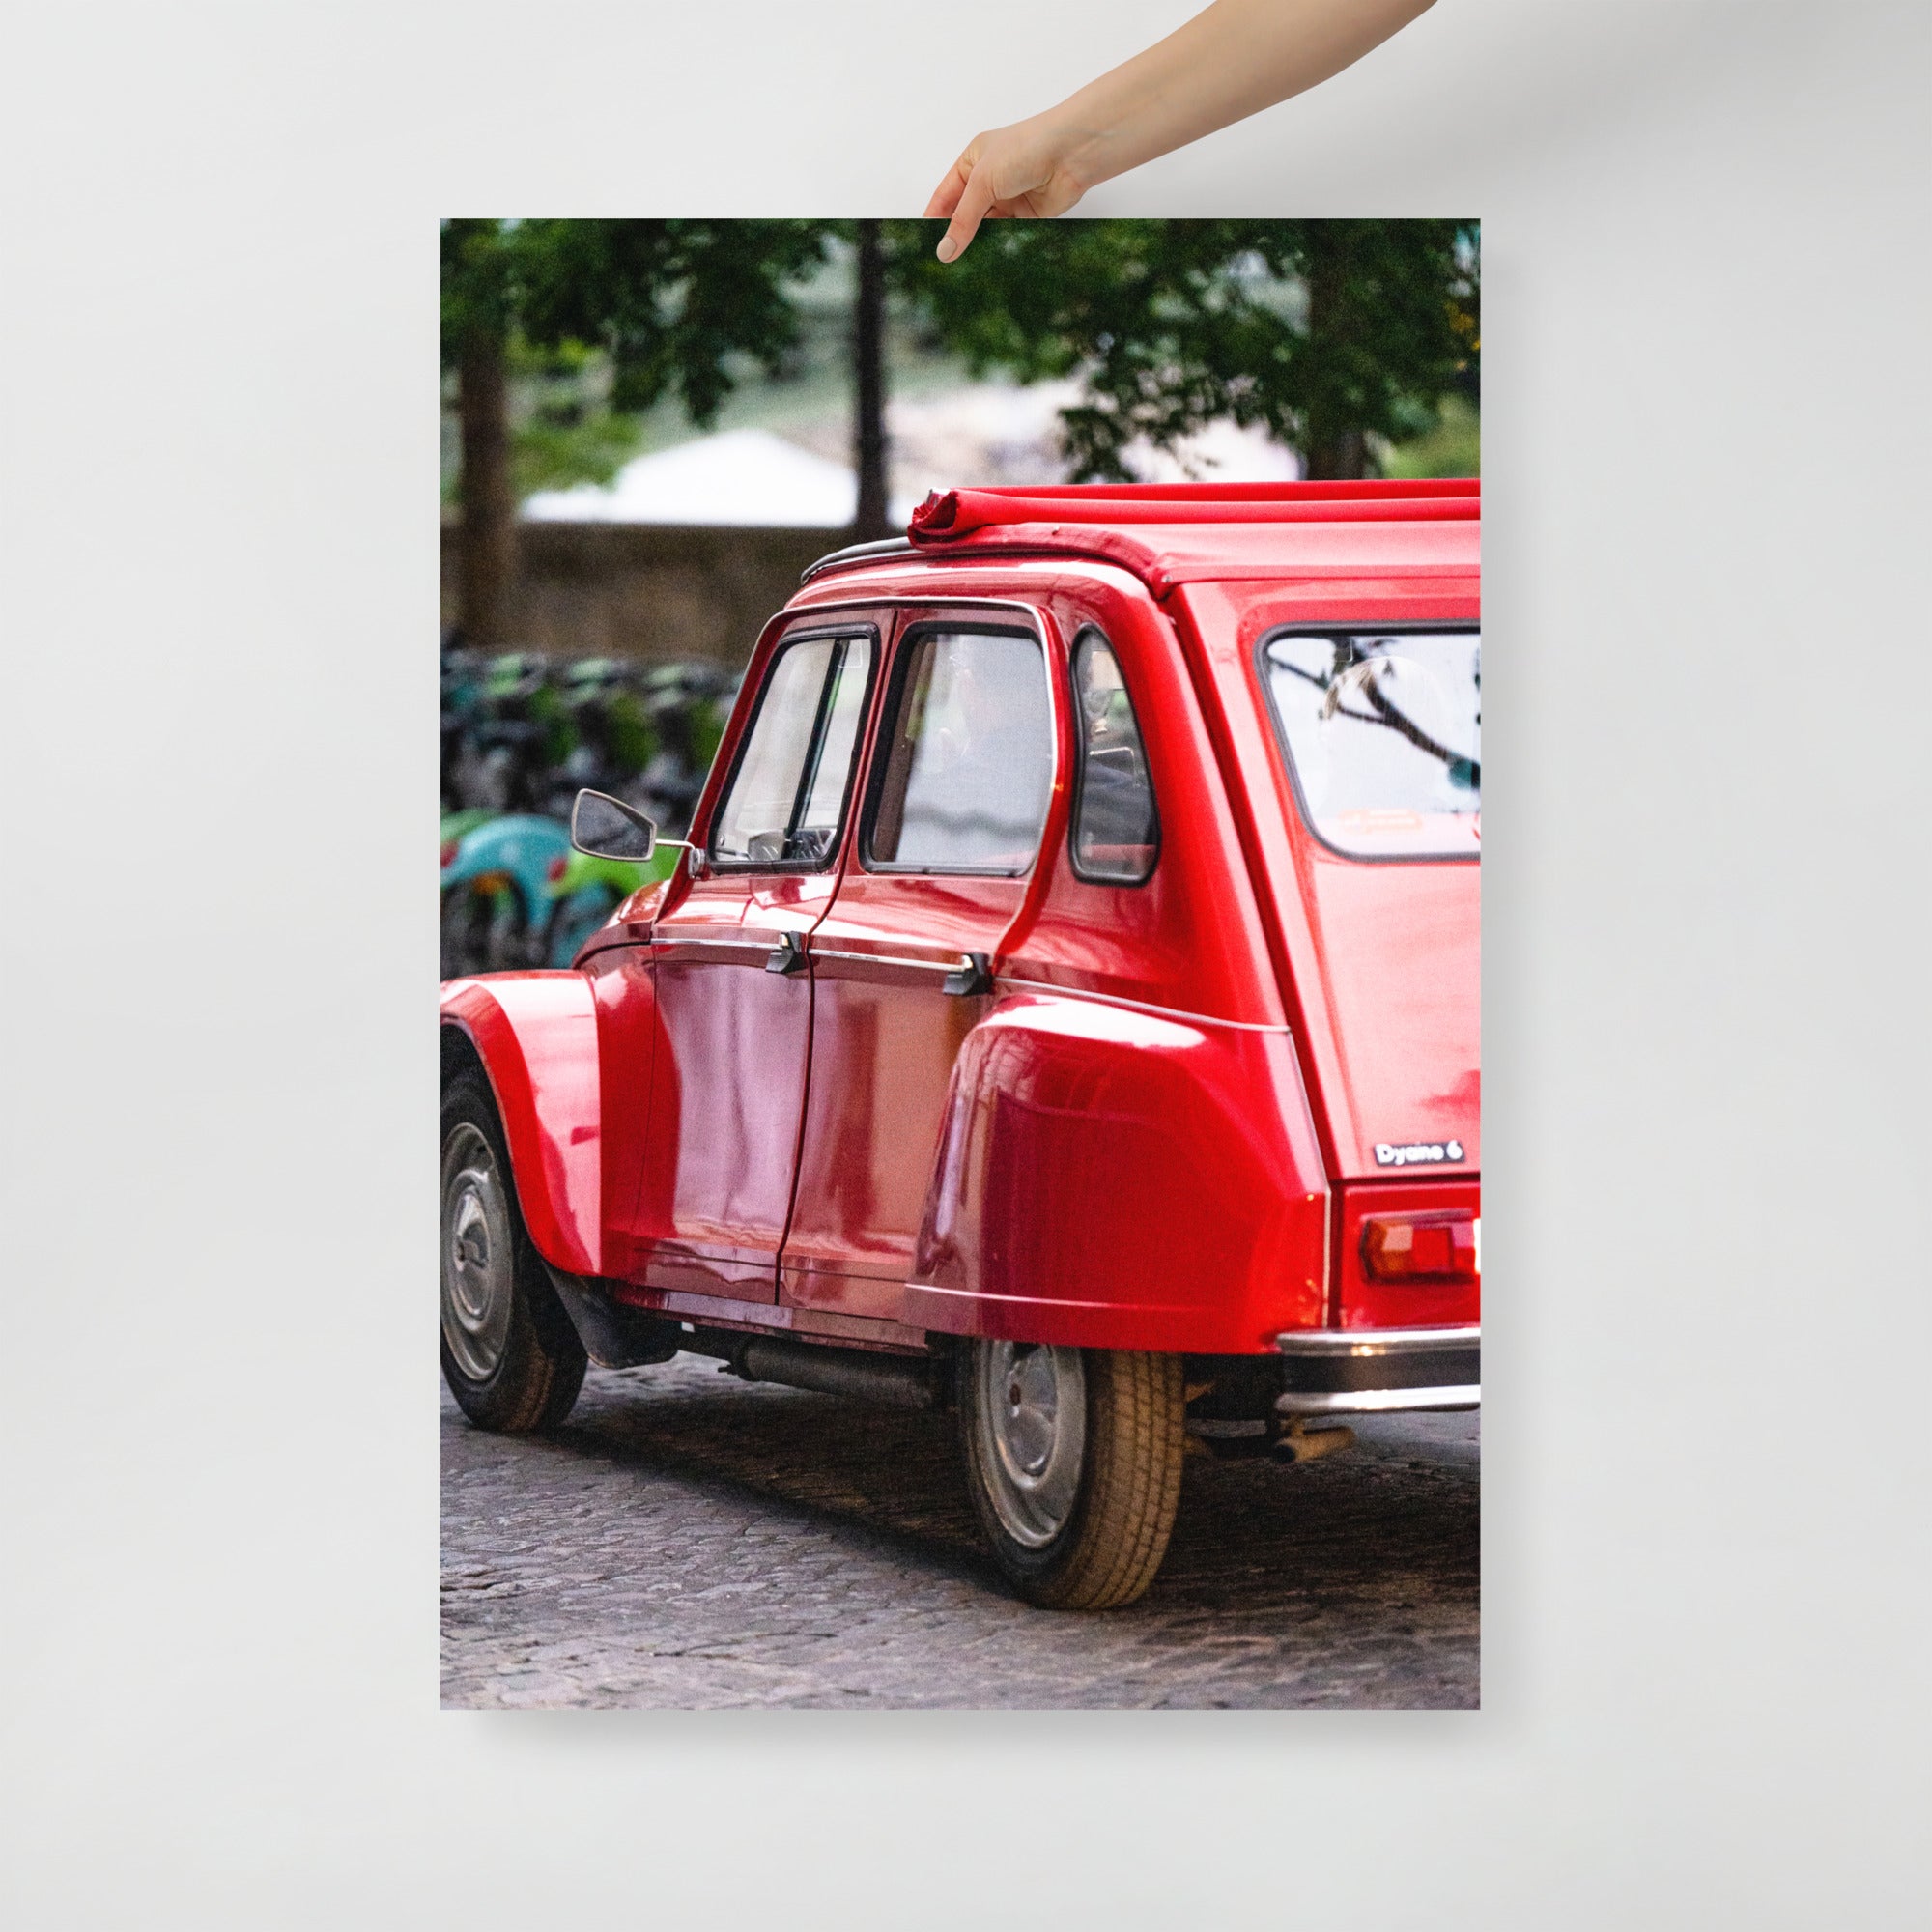 Poster mural - Citroën Dyane – Photographie de vielle voiture – Poster photo, poster XXL, Photo d’art, photographie murale et des posters muraux des photographies de rue unique au monde. La boutique de posters créée par un Photographe français.